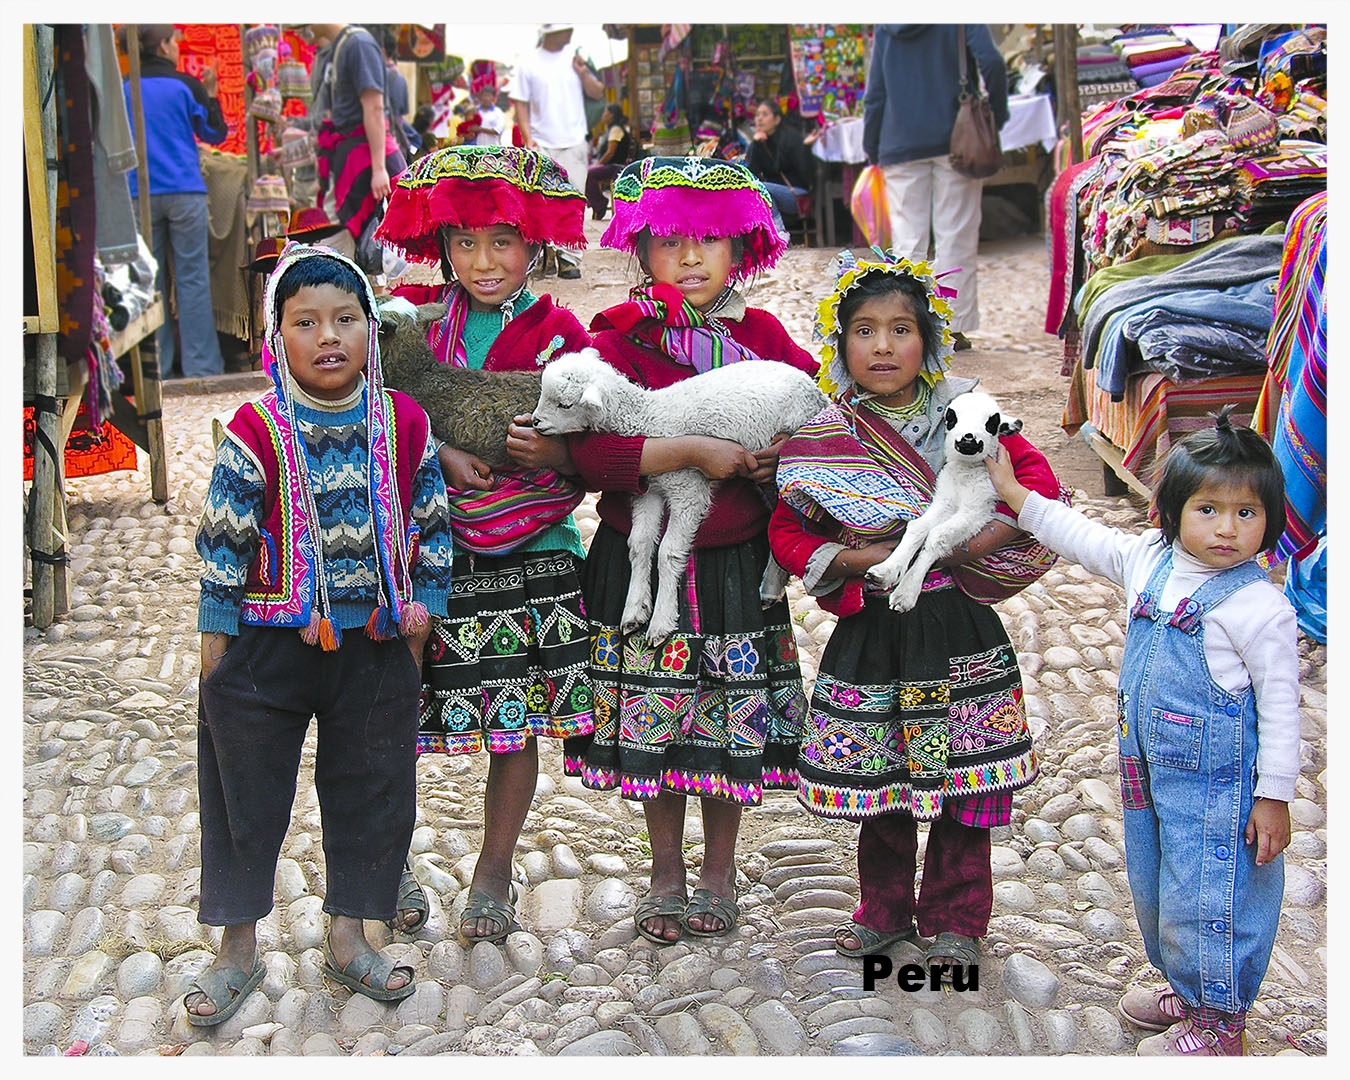   Click to view Peru Portfolio  